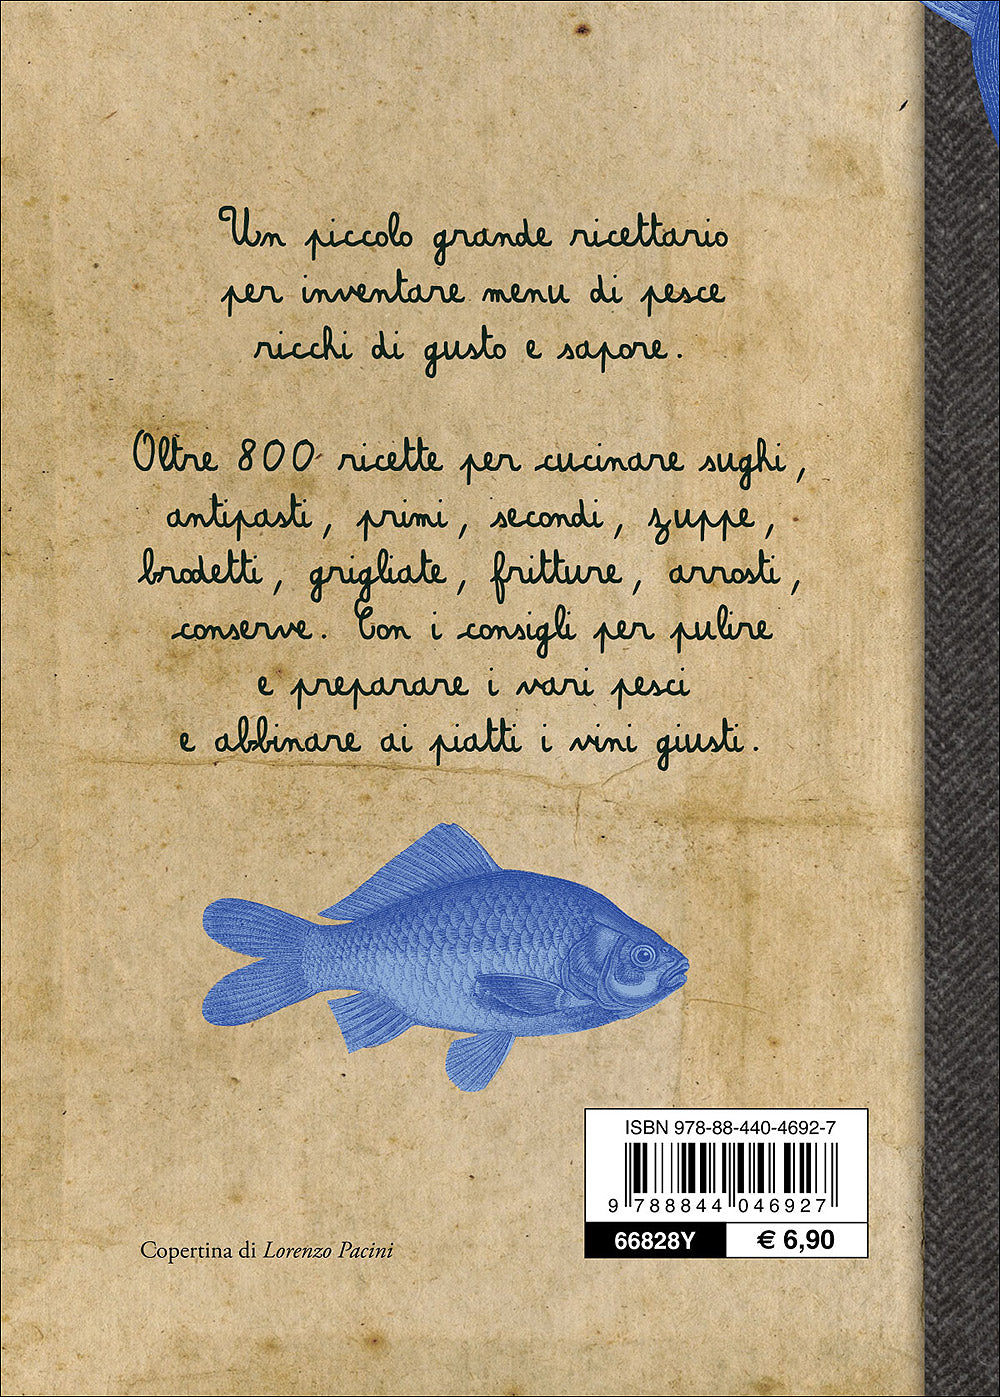 Il Cucchiaio Azzurro::Oltre 800 ricette di pesce